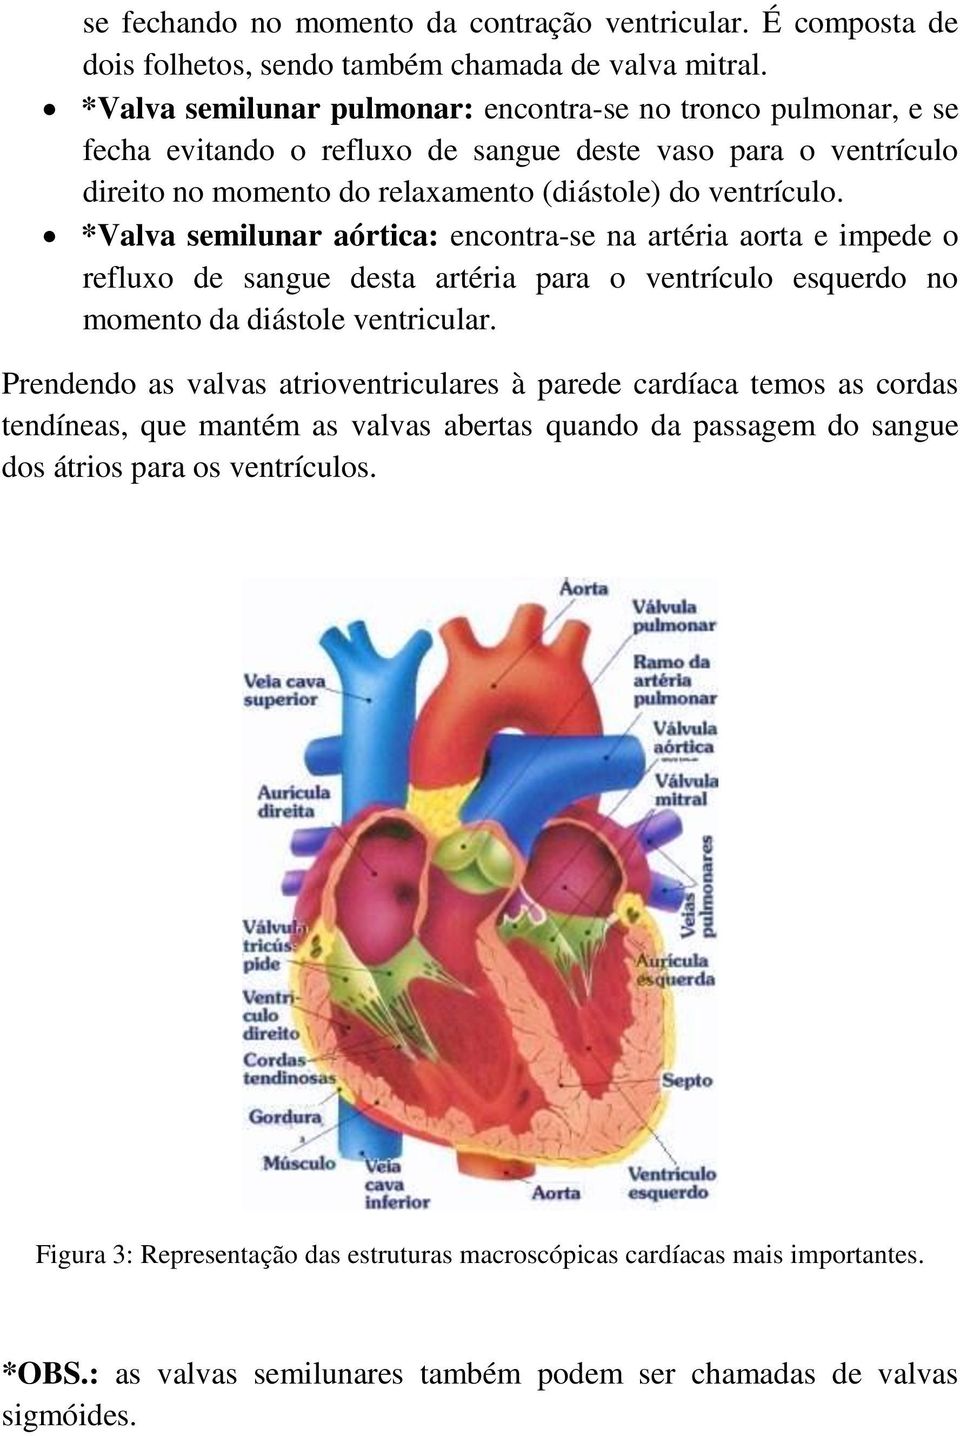 *Valva semilunar aórtica: encontra-se na artéria aorta e impede o refluxo de sangue desta artéria para o ventrículo esquerdo no momento da diástole ventricular.